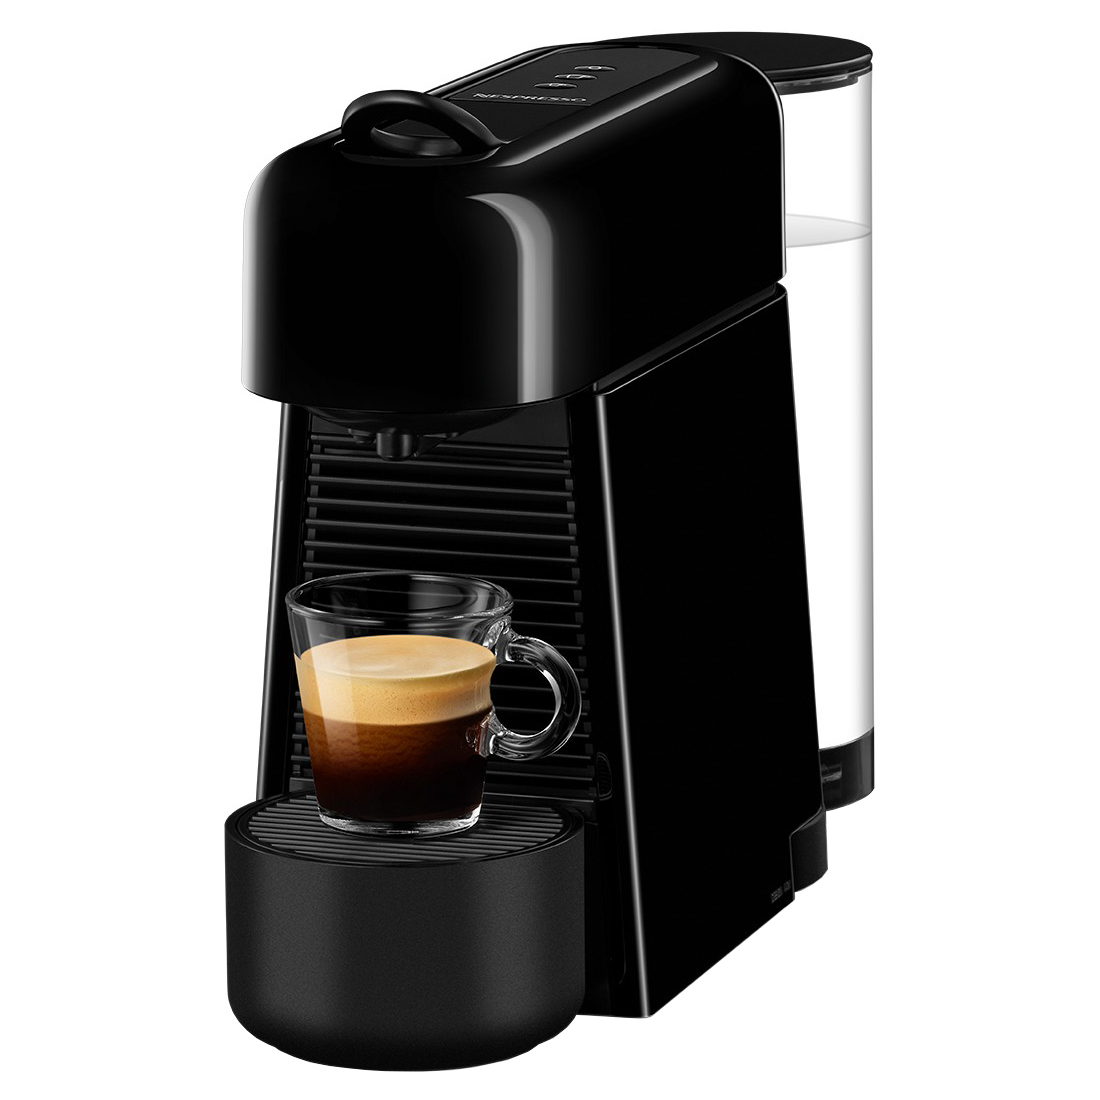 NESPRESSO 粉囊系統咖啡機 D45-SG-BK-NE0黑